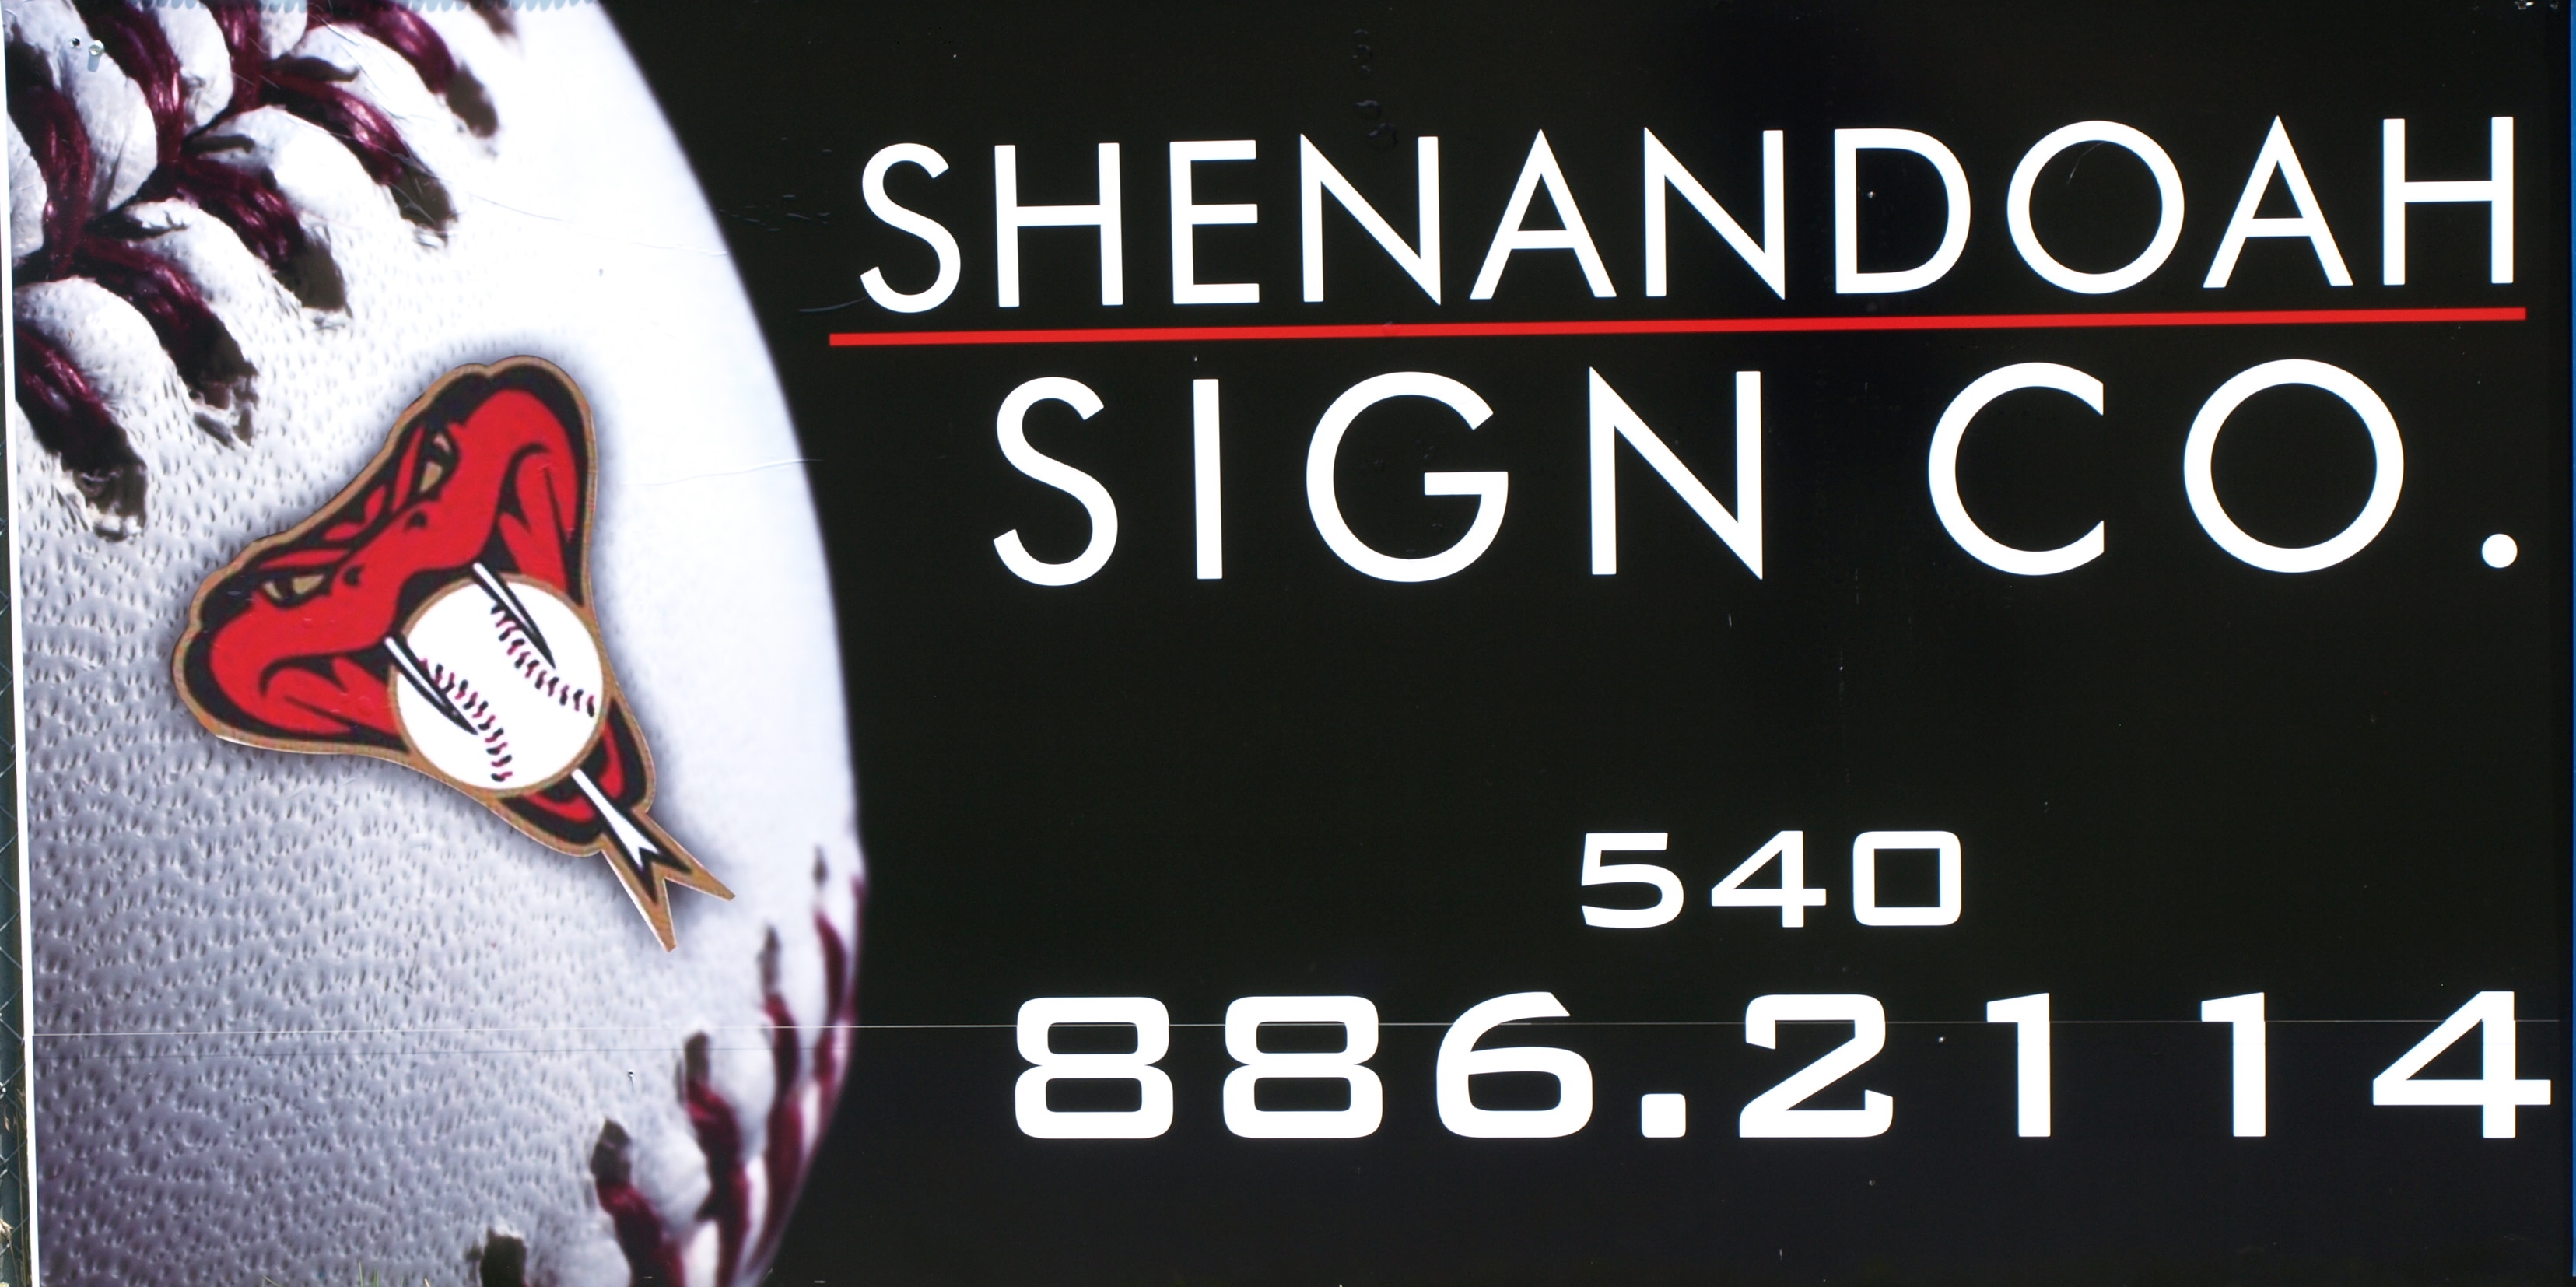 Shenandoah Sign Co.